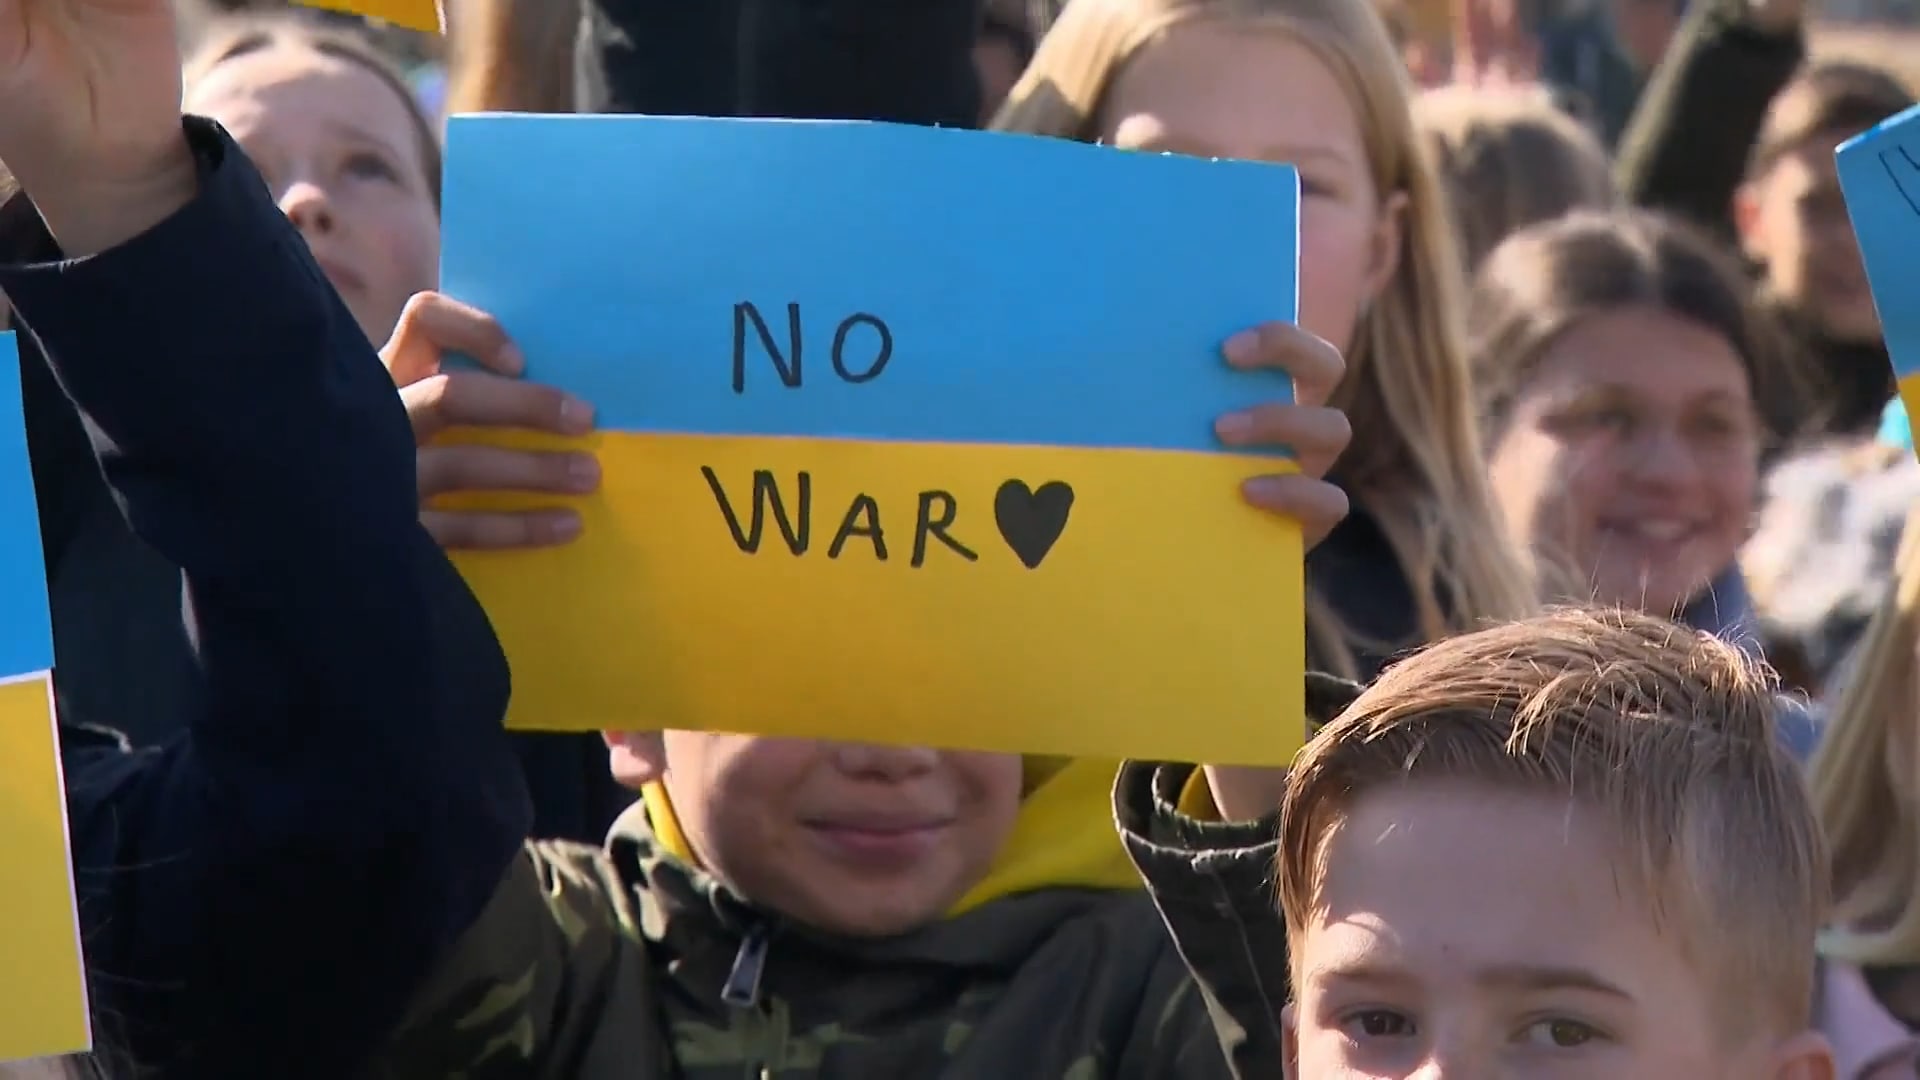 Bijna de helft van de tieners vreest ook oorlog in Nederland